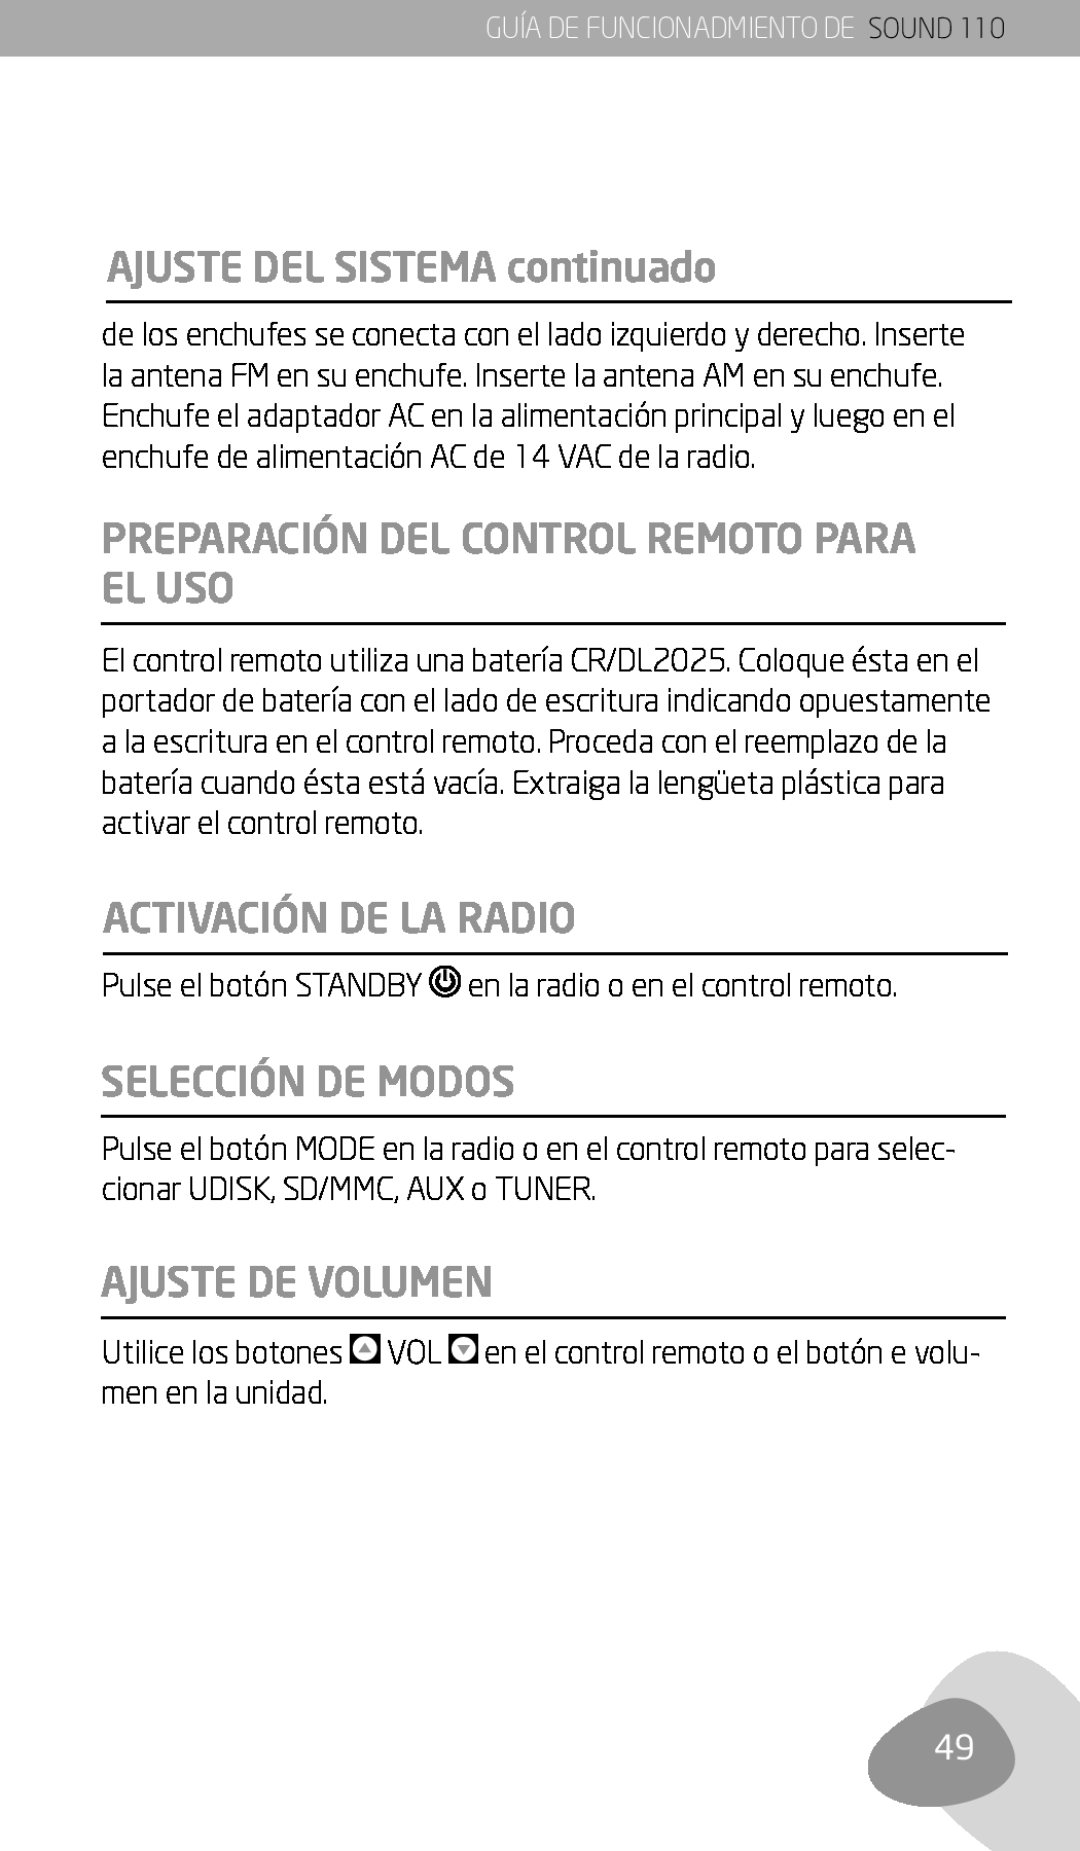 Eton 110 owner manual AJUSTE DEL SISTEMA continuado, Preparación Del Control Remoto Para El Uso, Activación De La Radio 